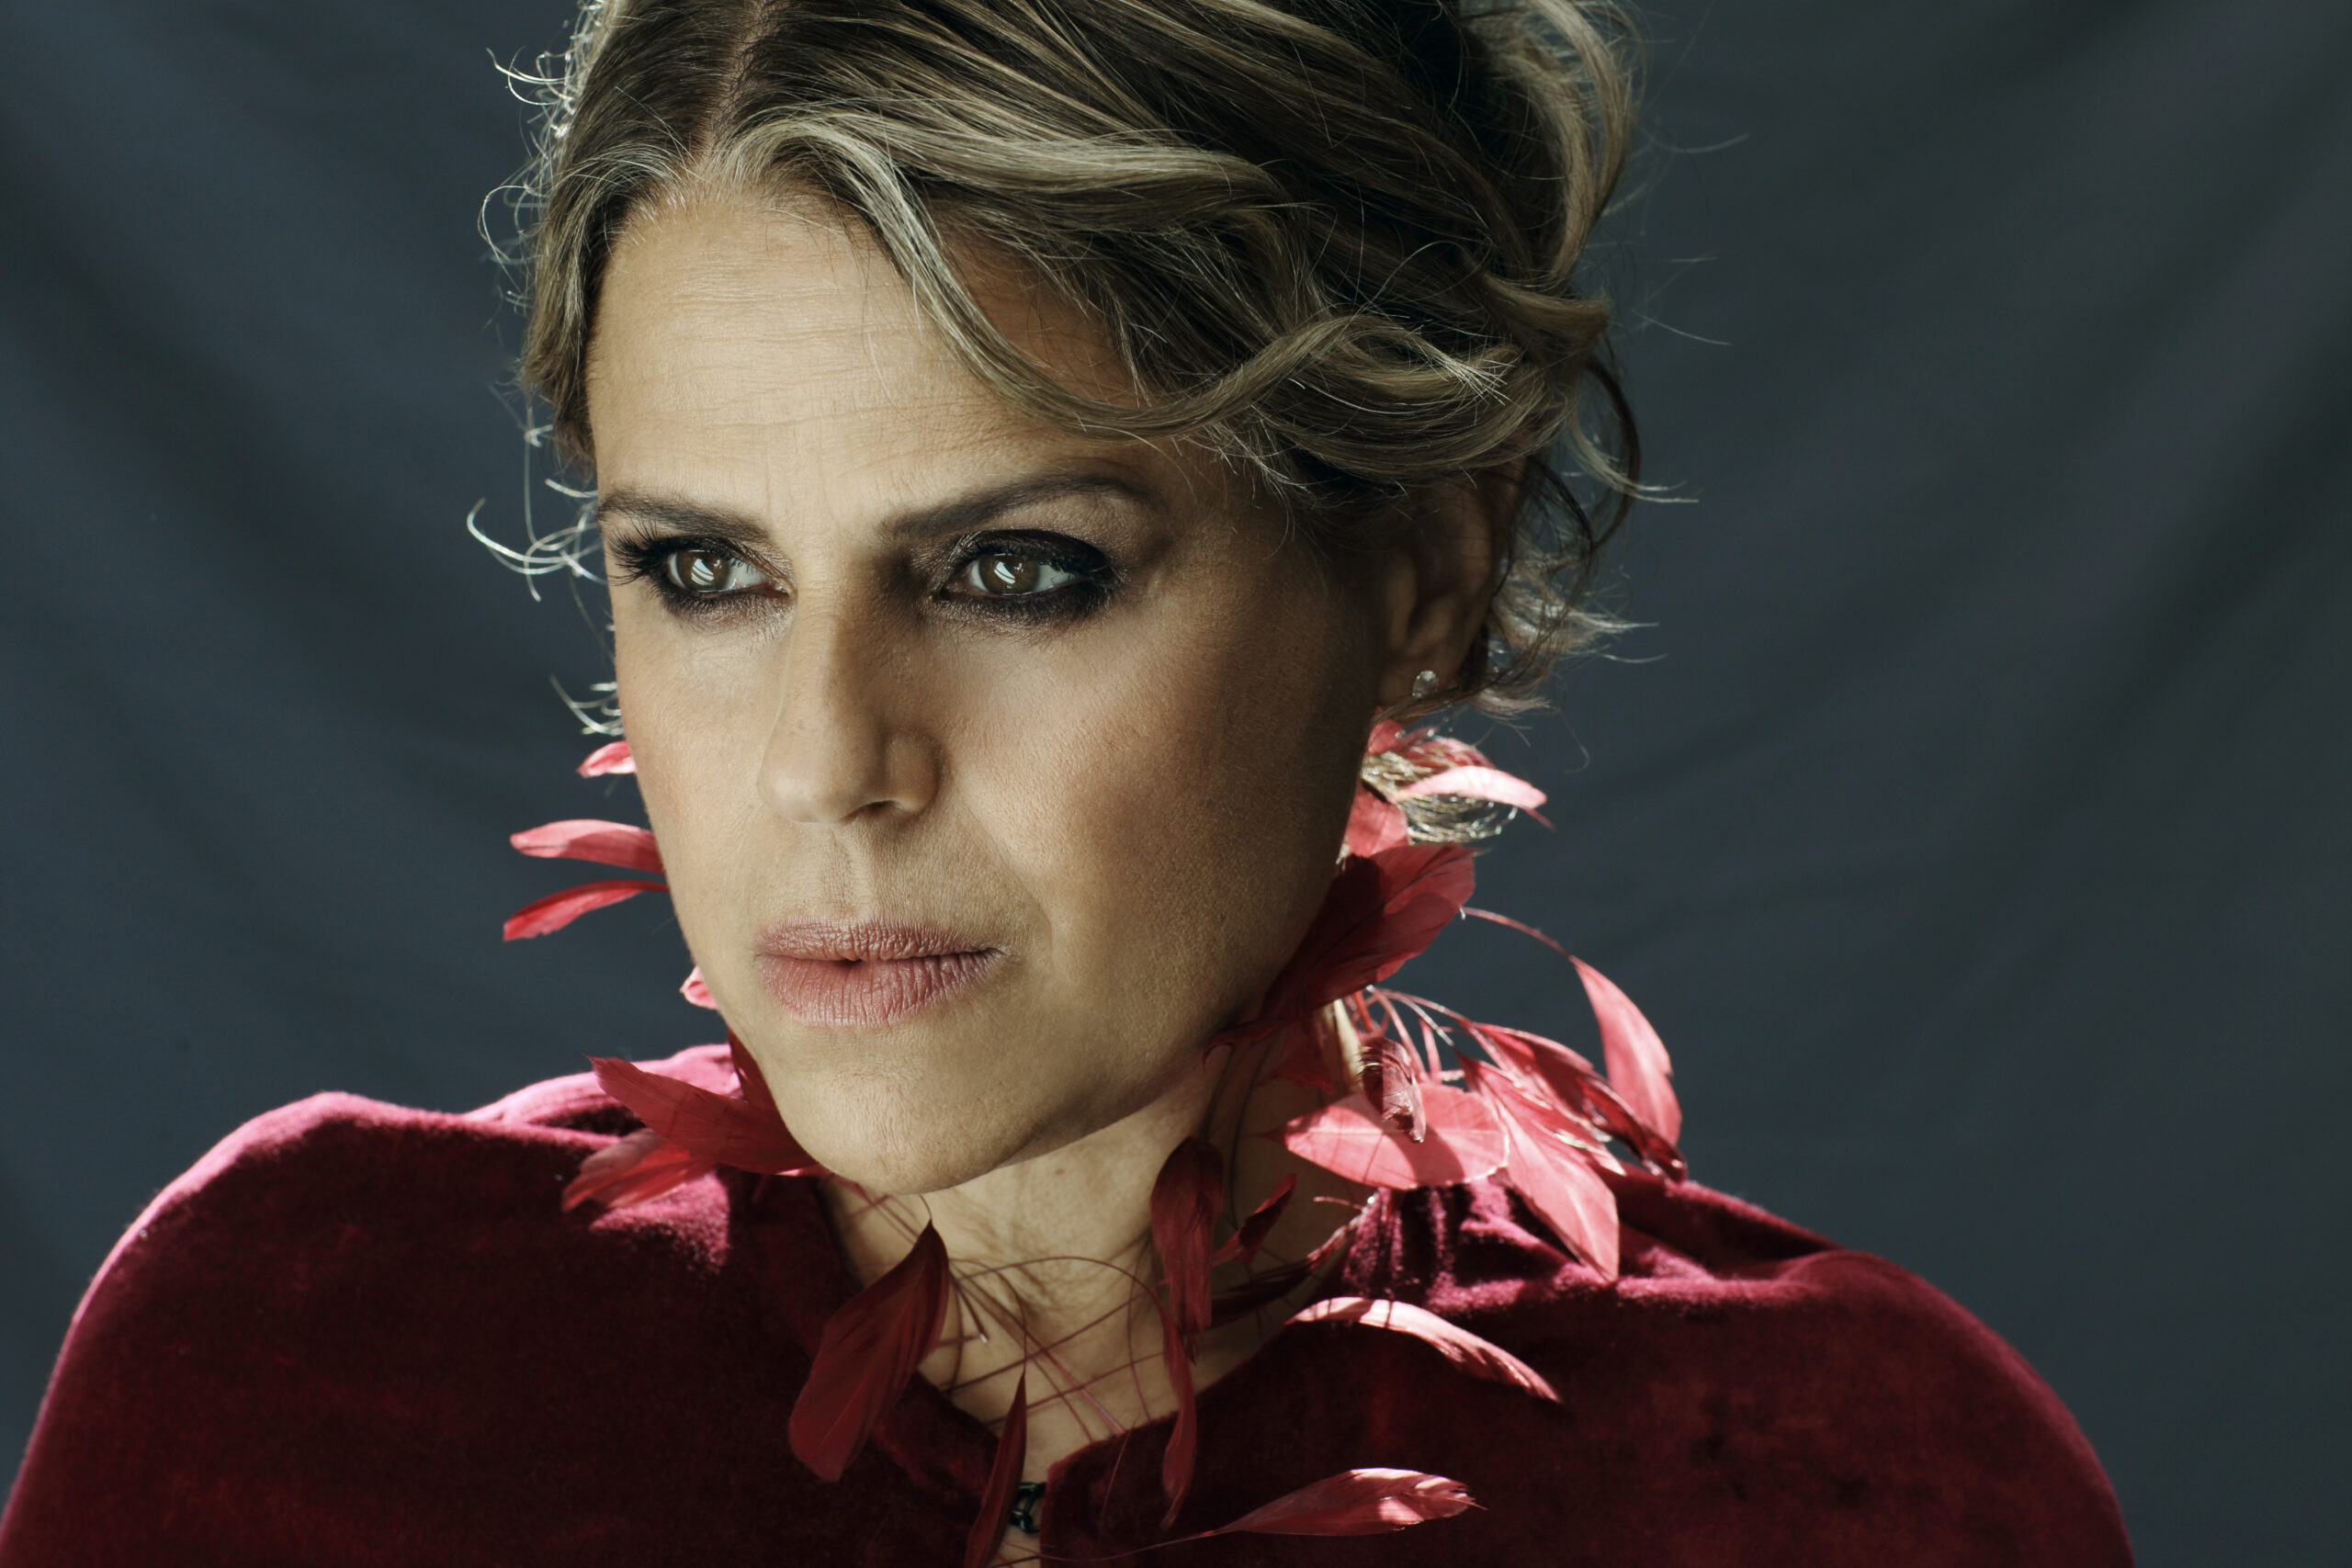 Cantora italiana Tosca fará show de encerramento do Festival Mia Cara